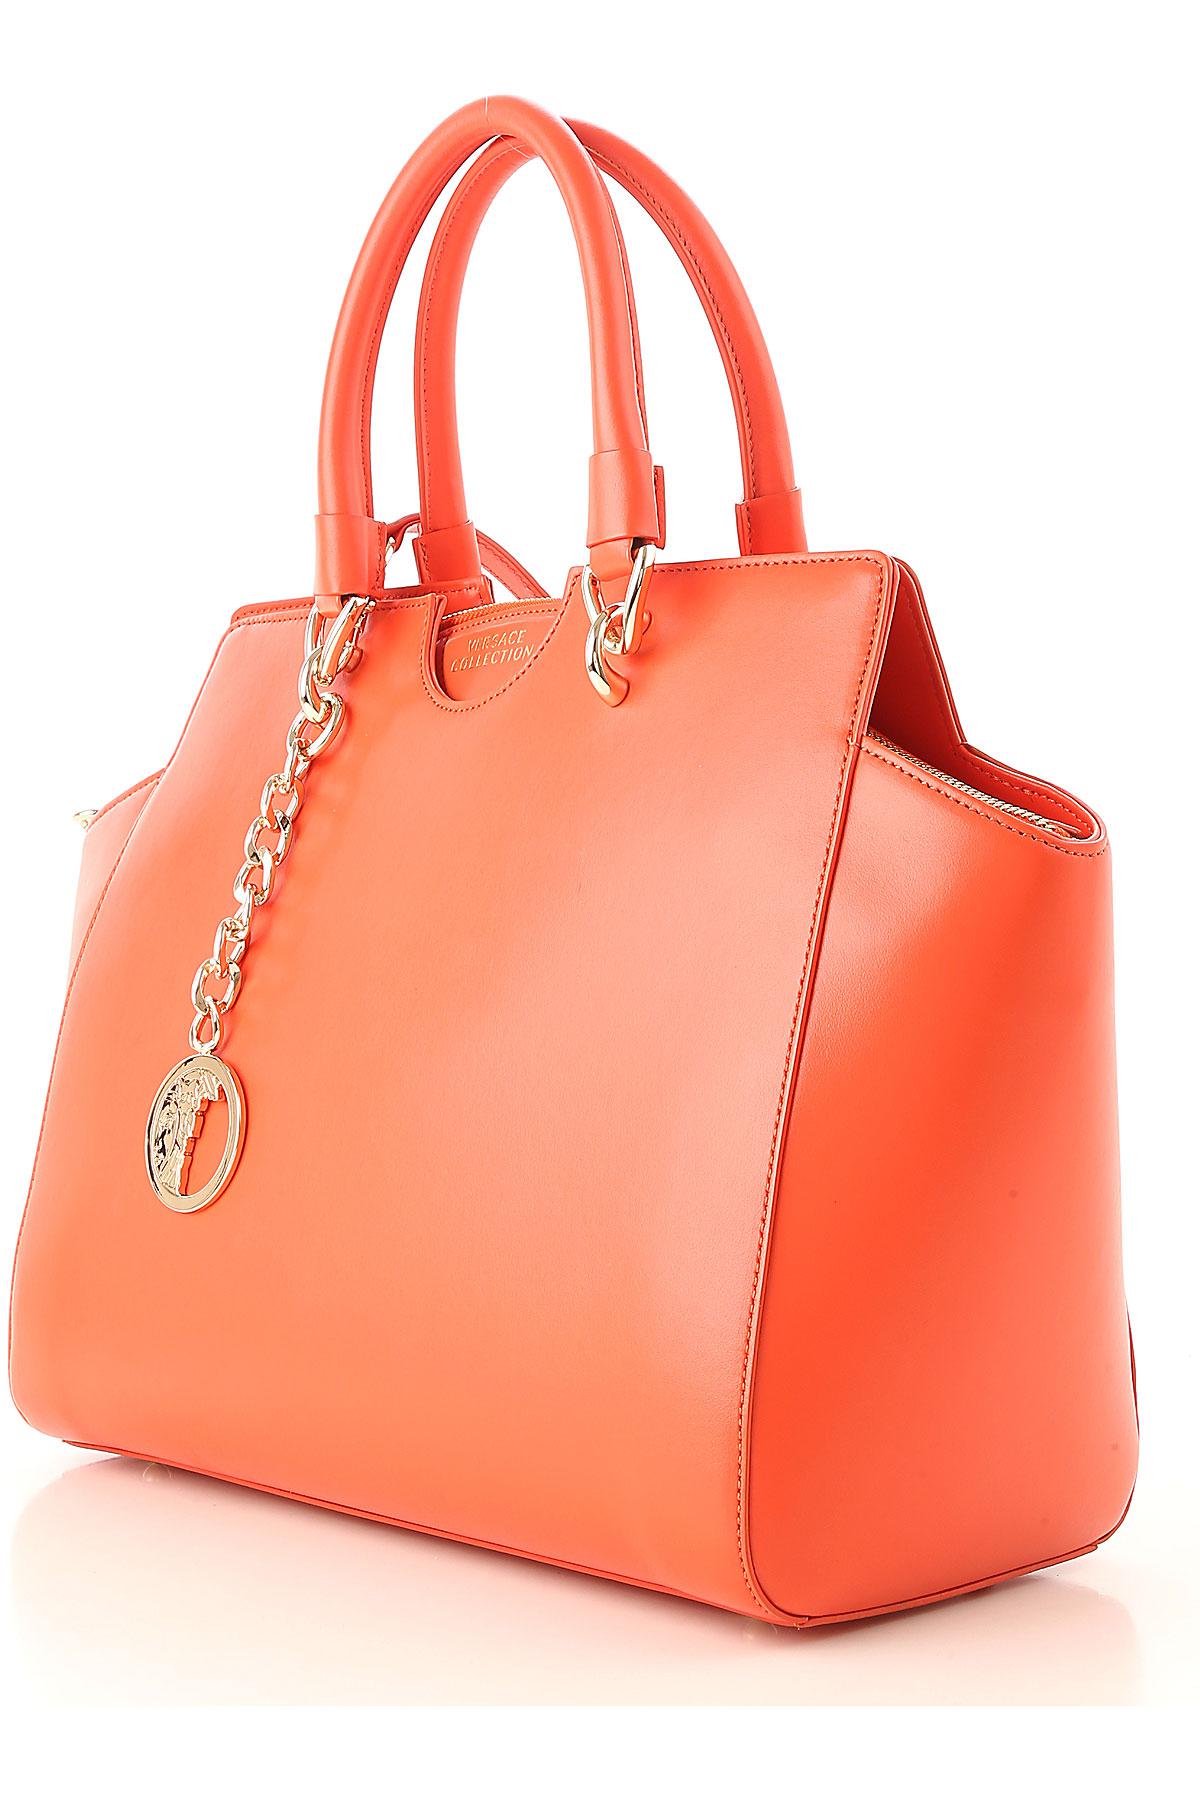 Versace Tote Bag On Sale in Orange - Lyst